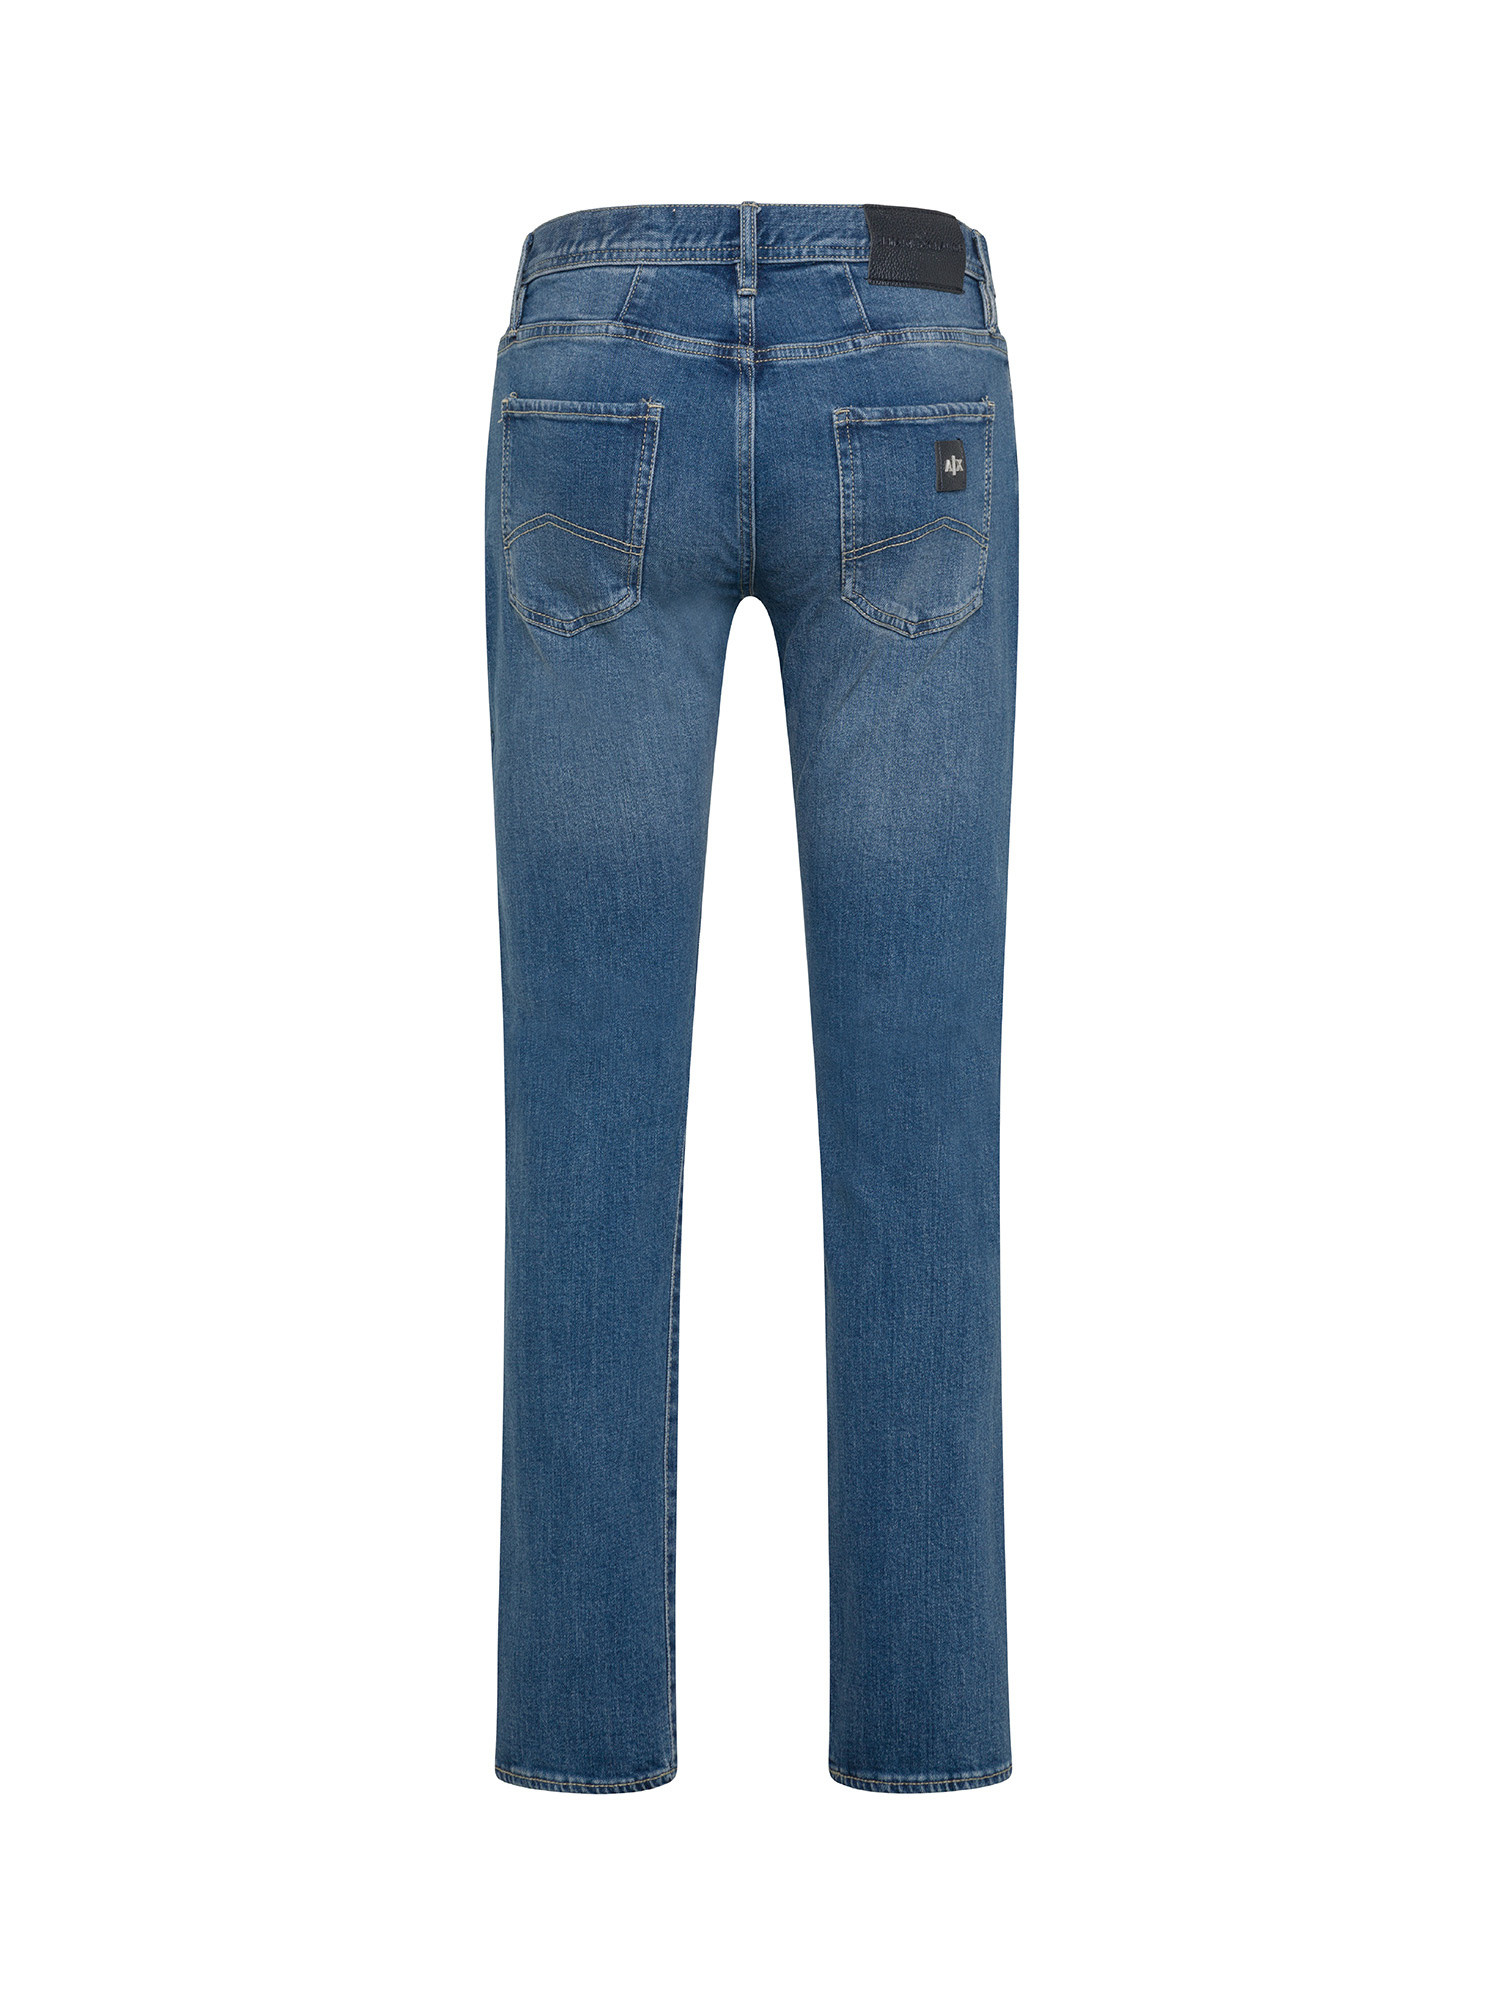 Armani Exchange - Slim fit five pocket jeans, Denim, large image number 1